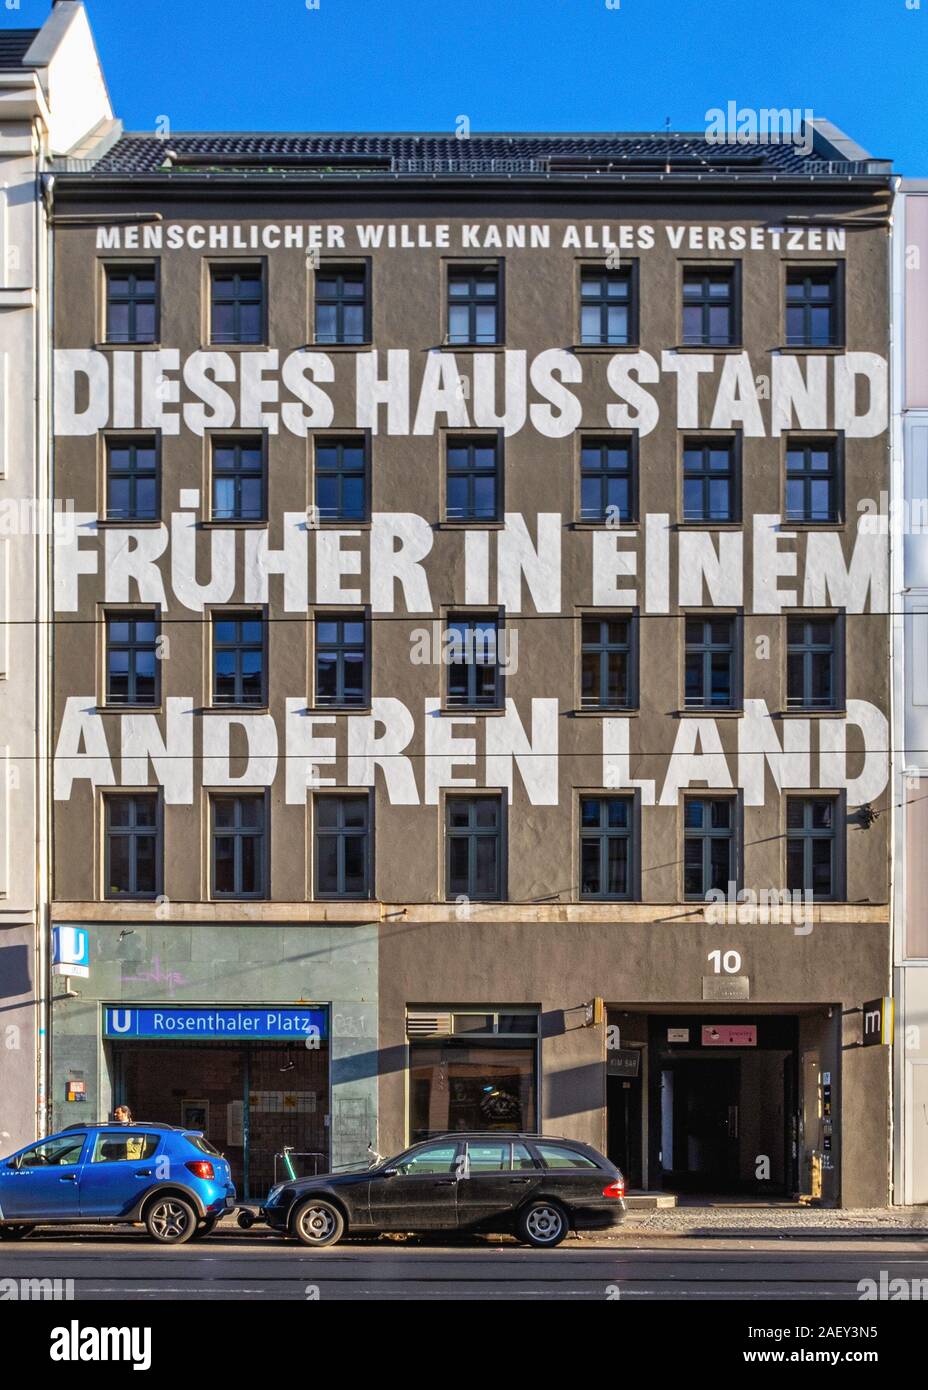 Berlin, Rosenthaler Platz U8 Underground railway entrance & sign in building with lettering 'Dieses Haus Stand Fruher in Einem Anderen Land' Stock Photo